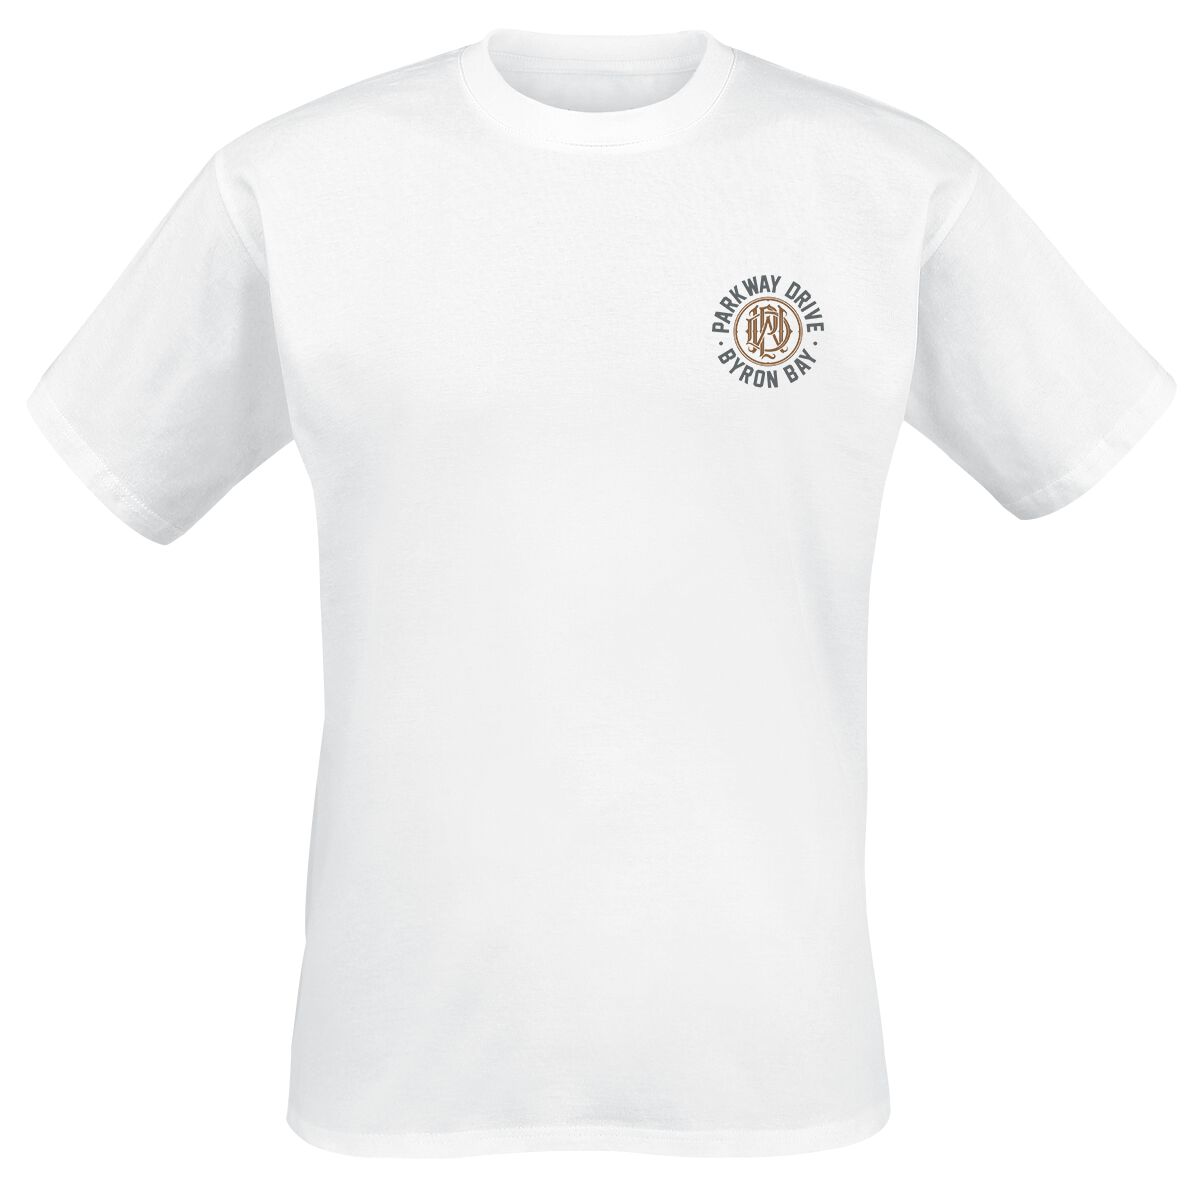 Parkway Drive T-Shirt - Devil Tricks - S bis XXL - für Männer - Größe S - weiß  - Lizenziertes Merchandise!